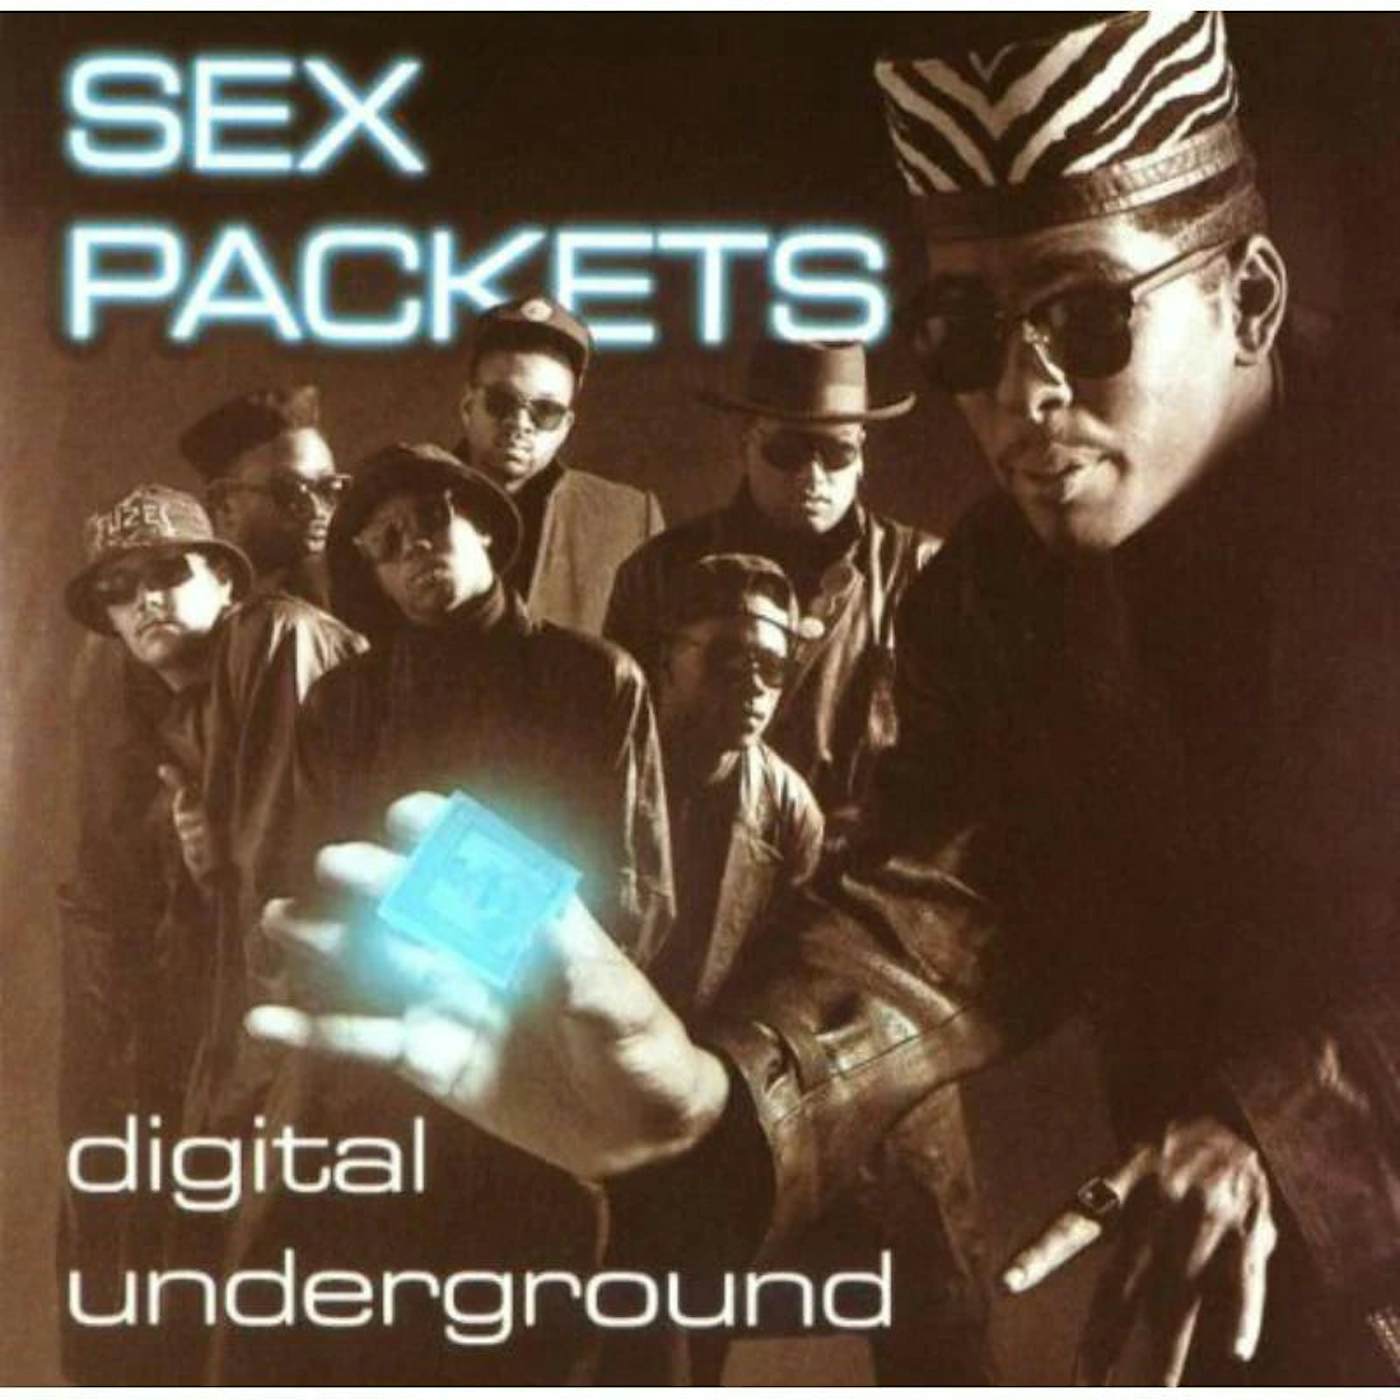 Digital Underground LP - Sex Packets (Vinyl)